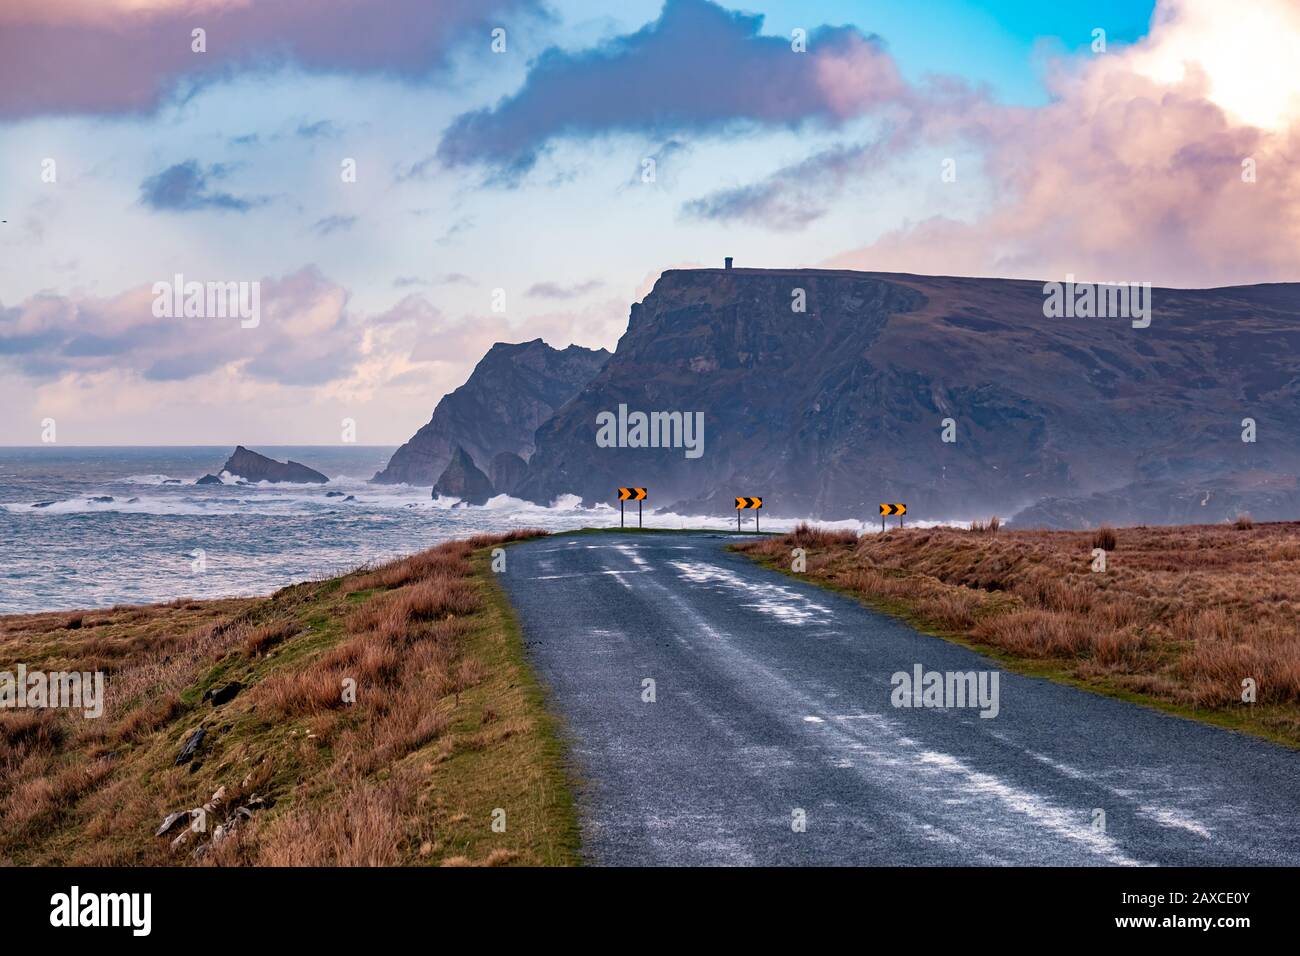 La route entre Malin Beg et Glencolumbkille pendant la tempête Ciara dans le comté de Donegal - Irlande. Banque D'Images